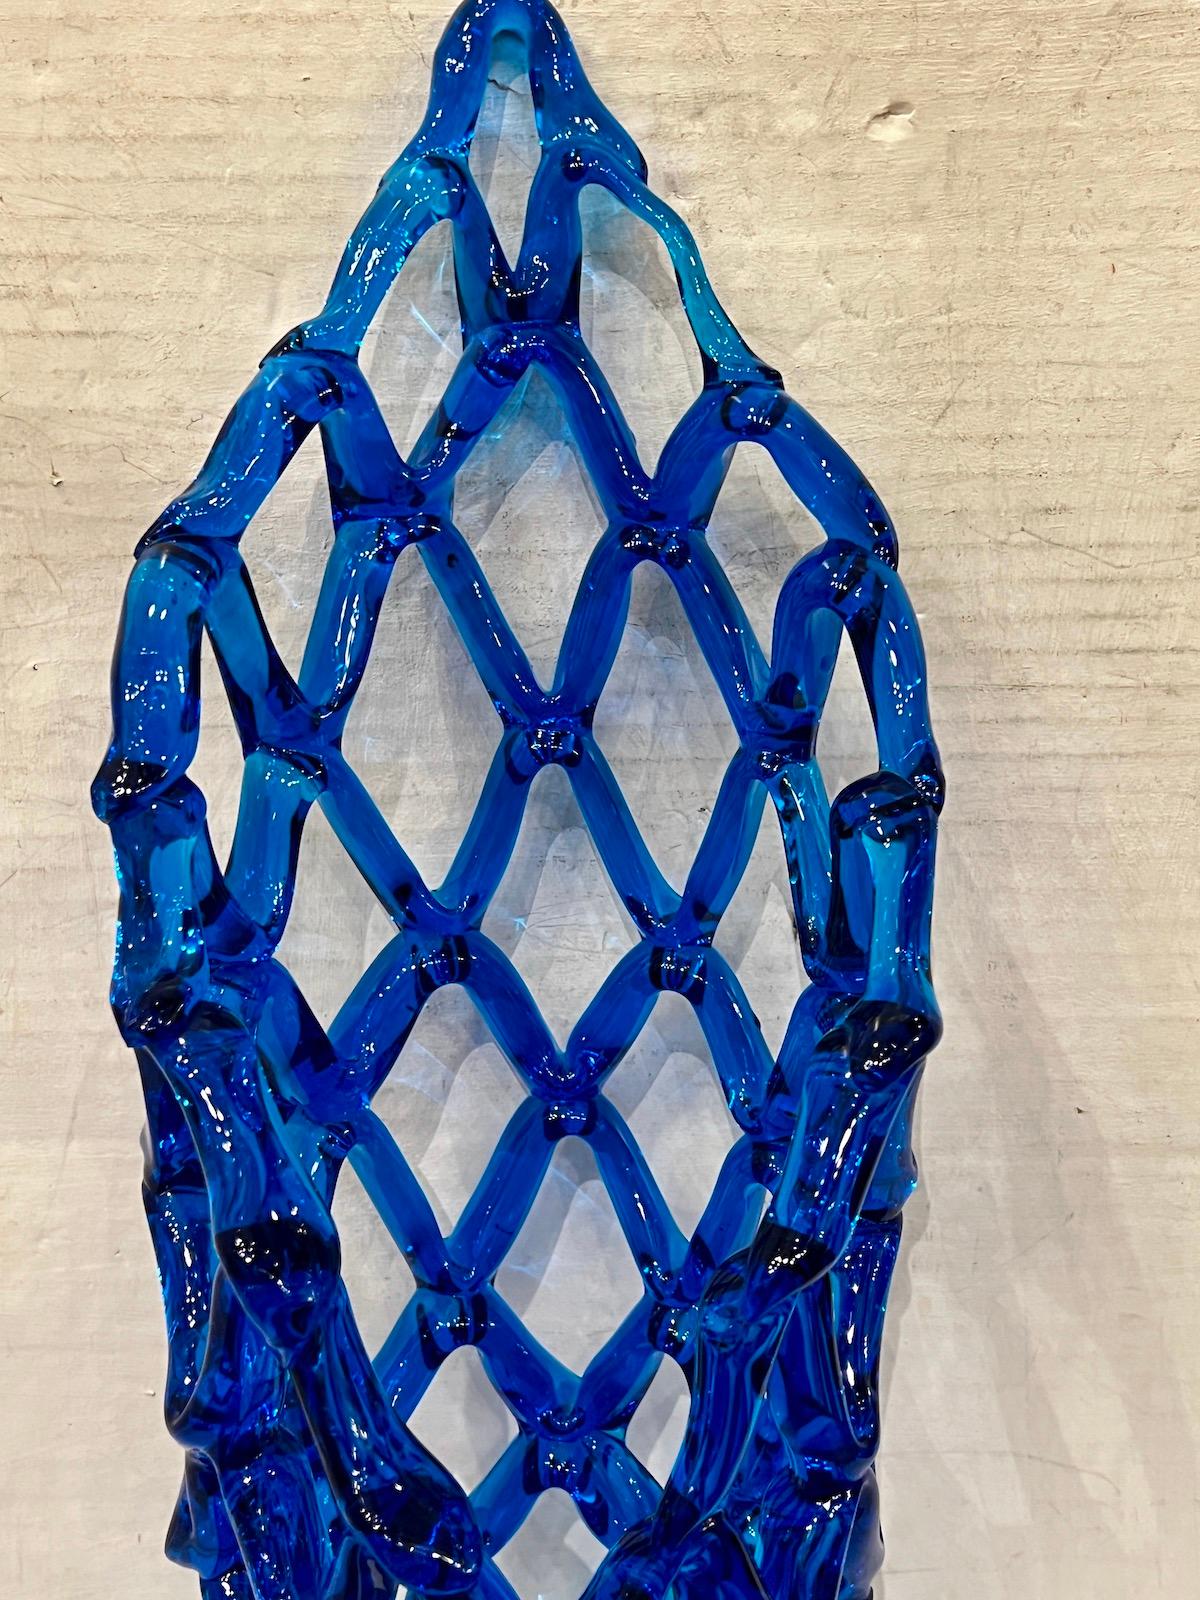 Eine seltene italienische Murano-Vase aus den 1960er Jahren, mundgeblasen und durchbrochen, aus blauem Glas.

Abmessungen:
Höhe: 19,5